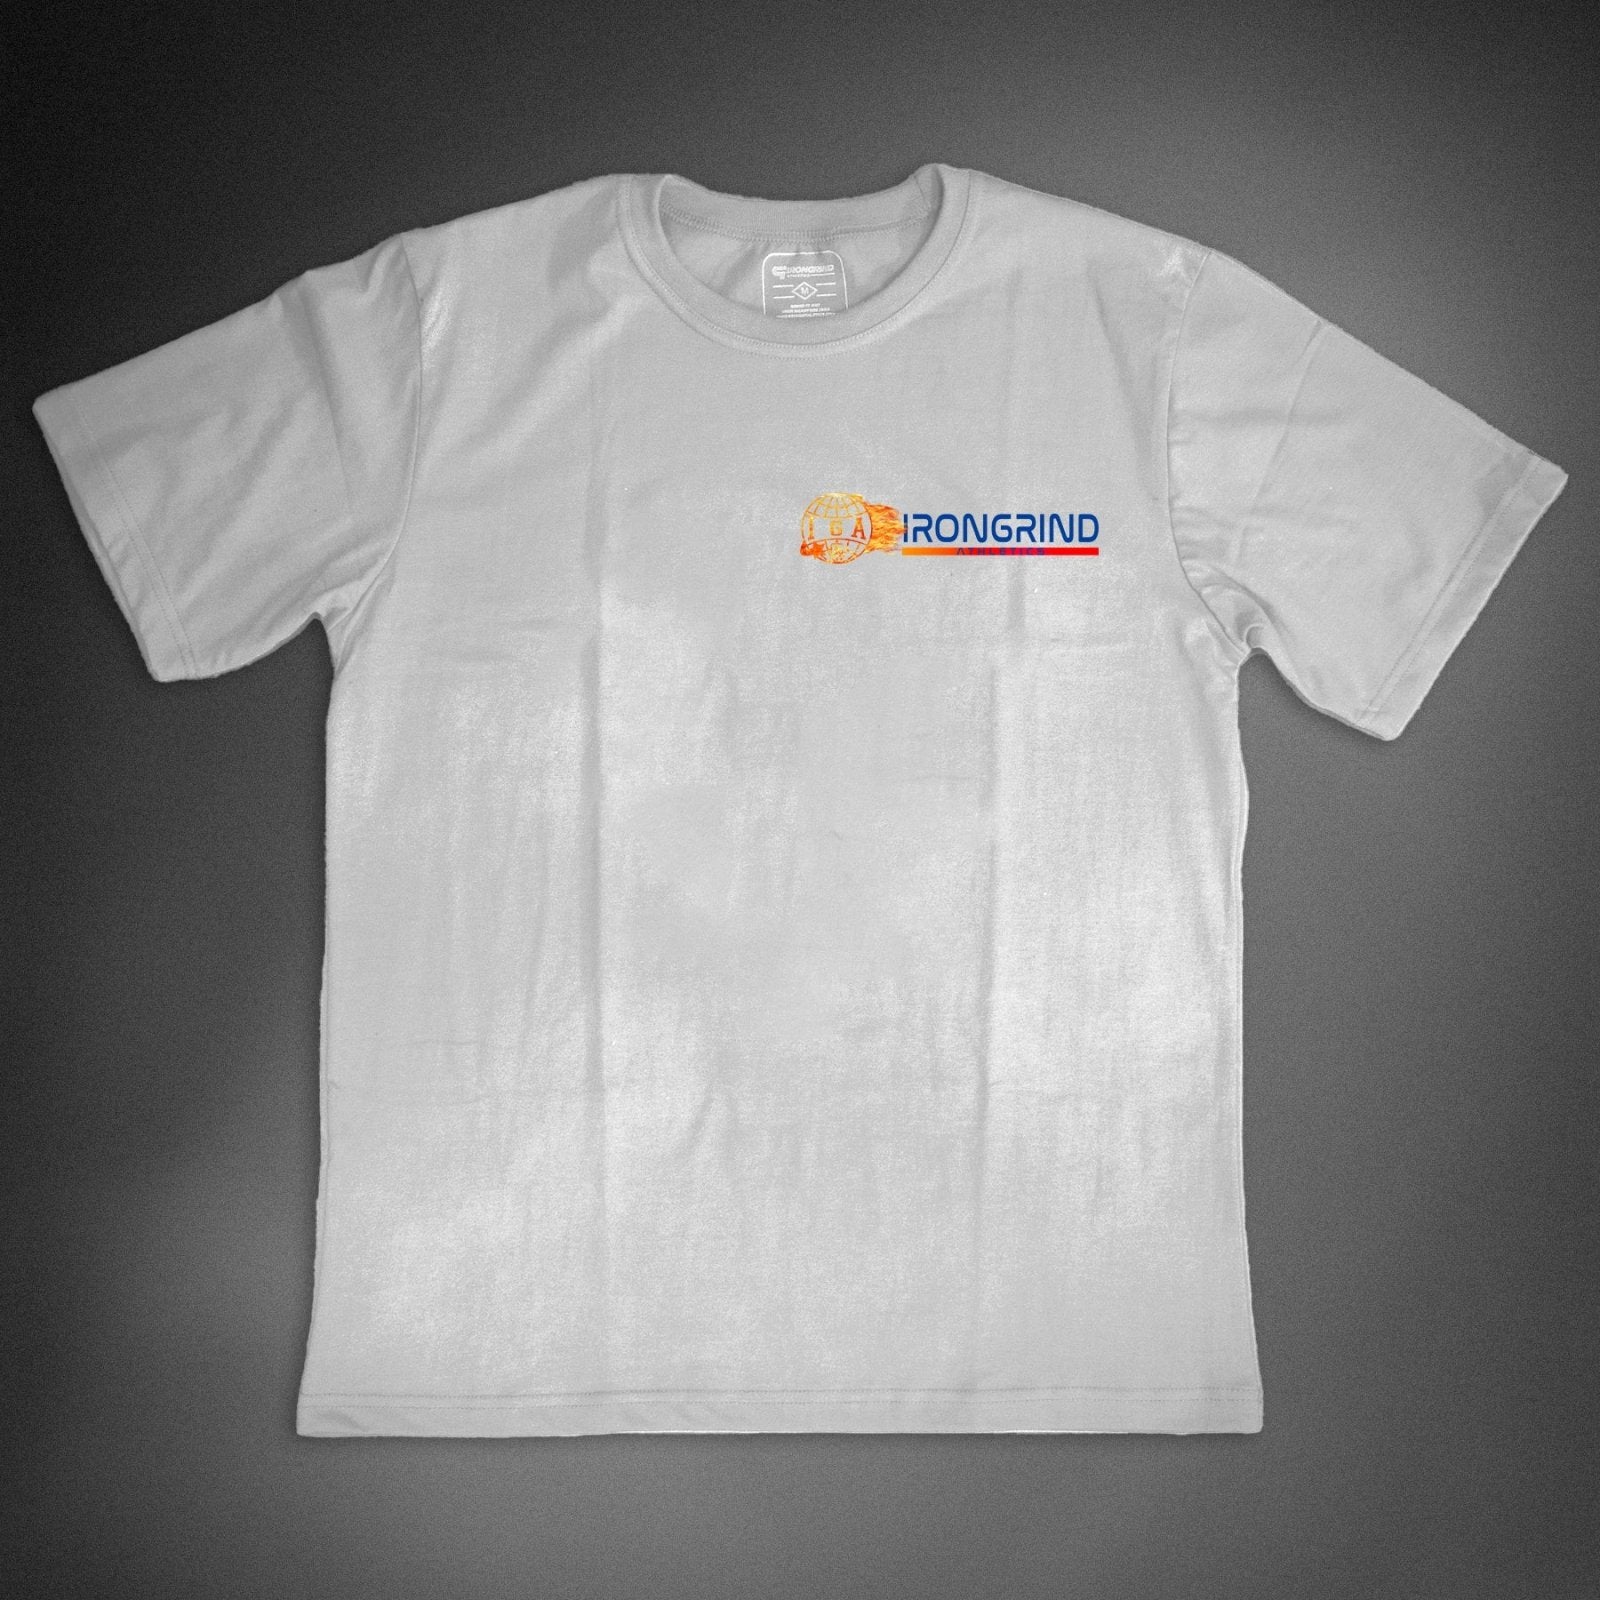 Prevail 'NASA' T-Shirt - IronGrind Athletics - activewear - gymshark - alphalete